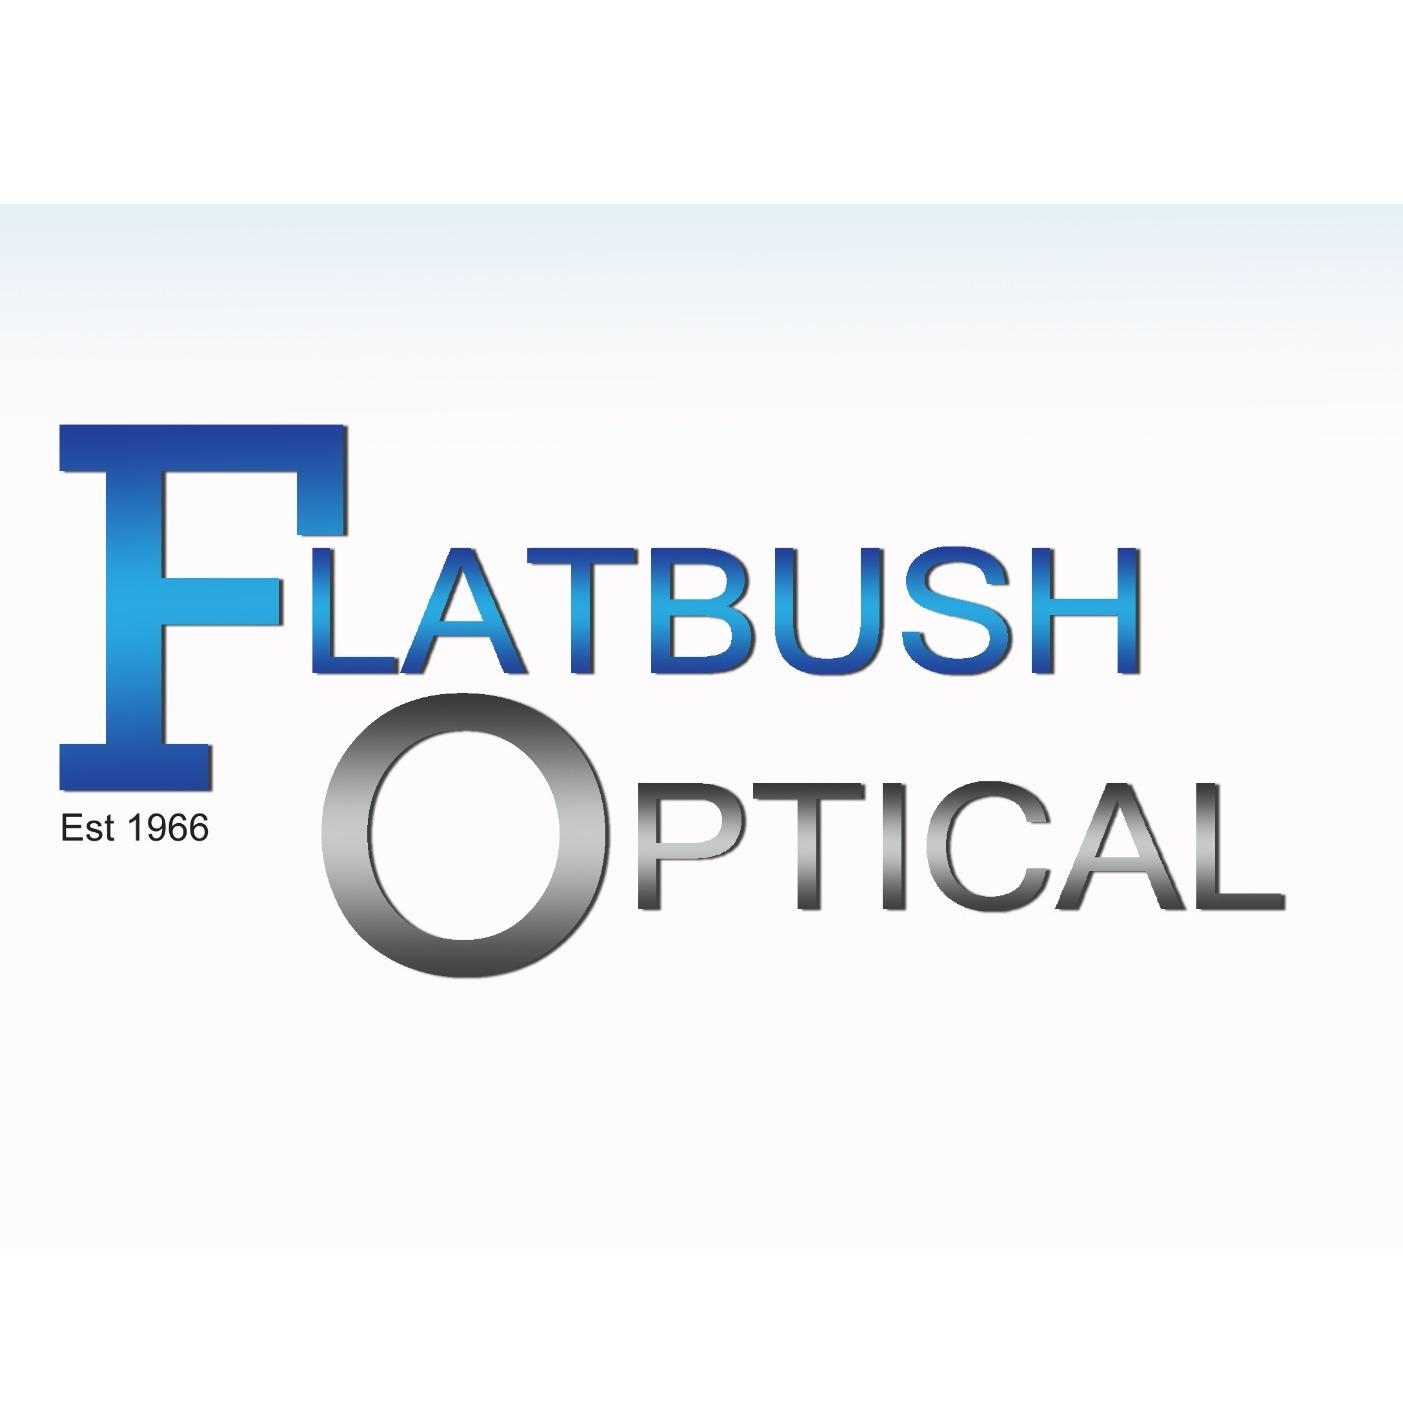 Flatbush Optical Photo